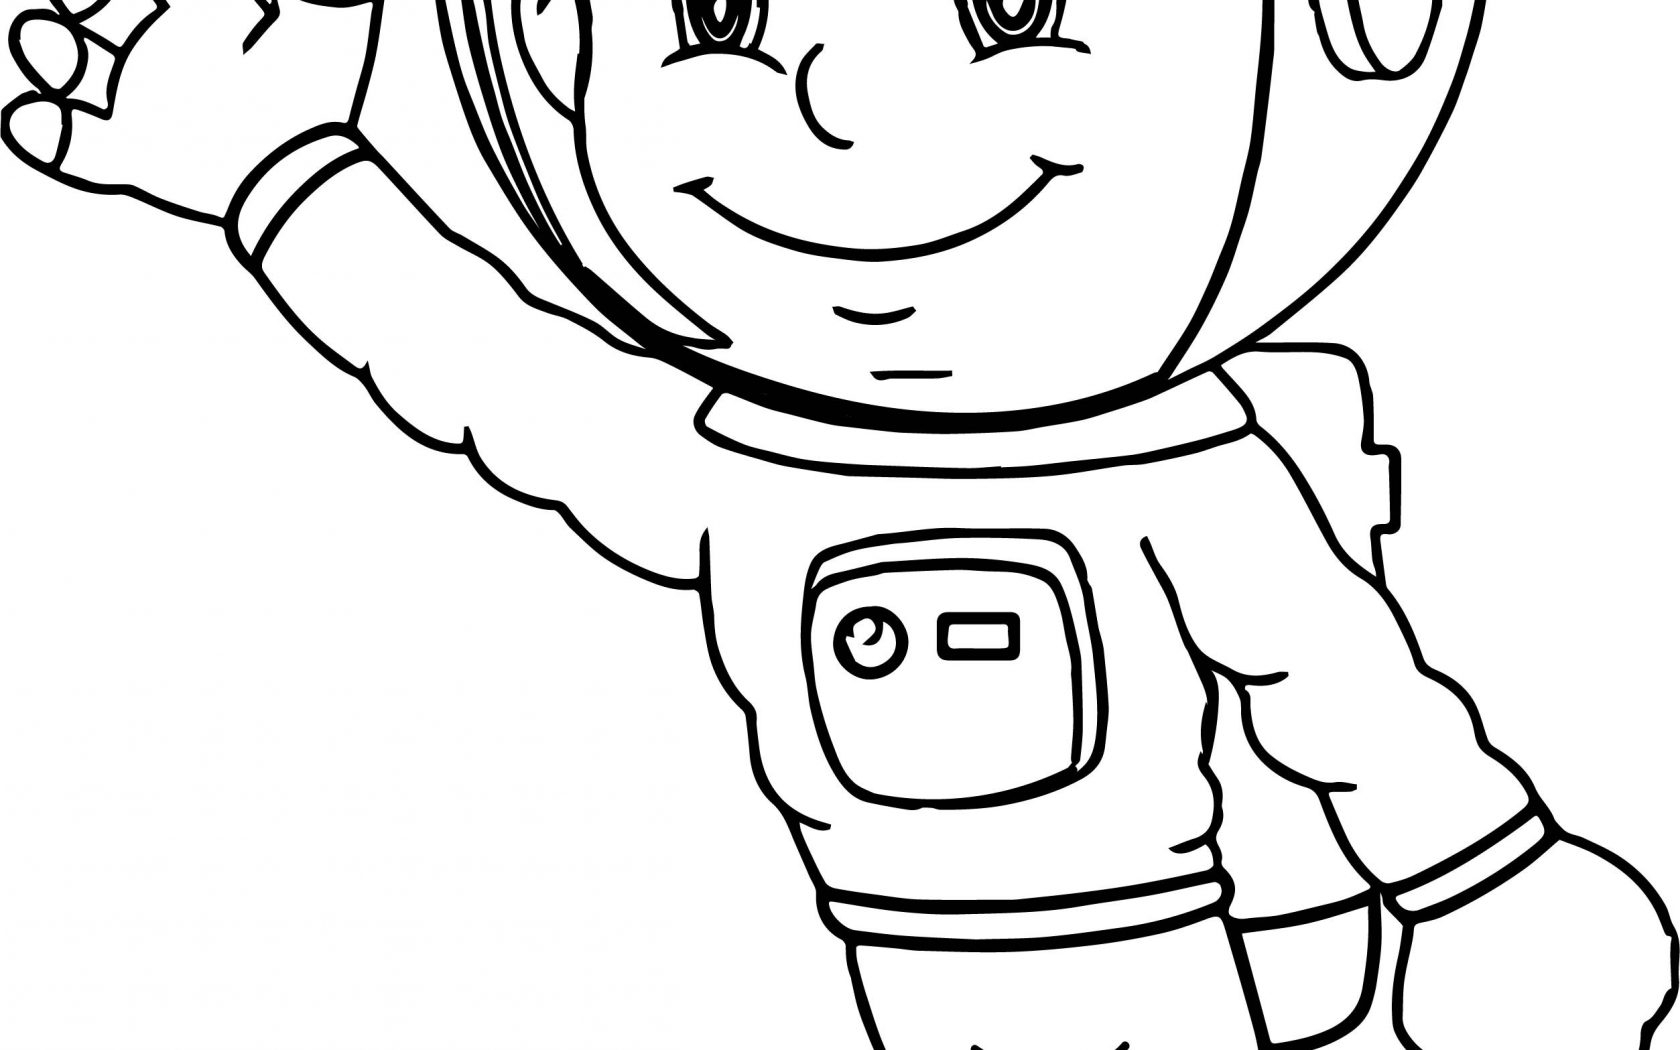 Космонавт шаблон для вырезания распечатать. Космонавт раскраска. Космонавт раскраска для детей. Космонавт картинка для детей раскраска. Космонавт раскраска для малышей.